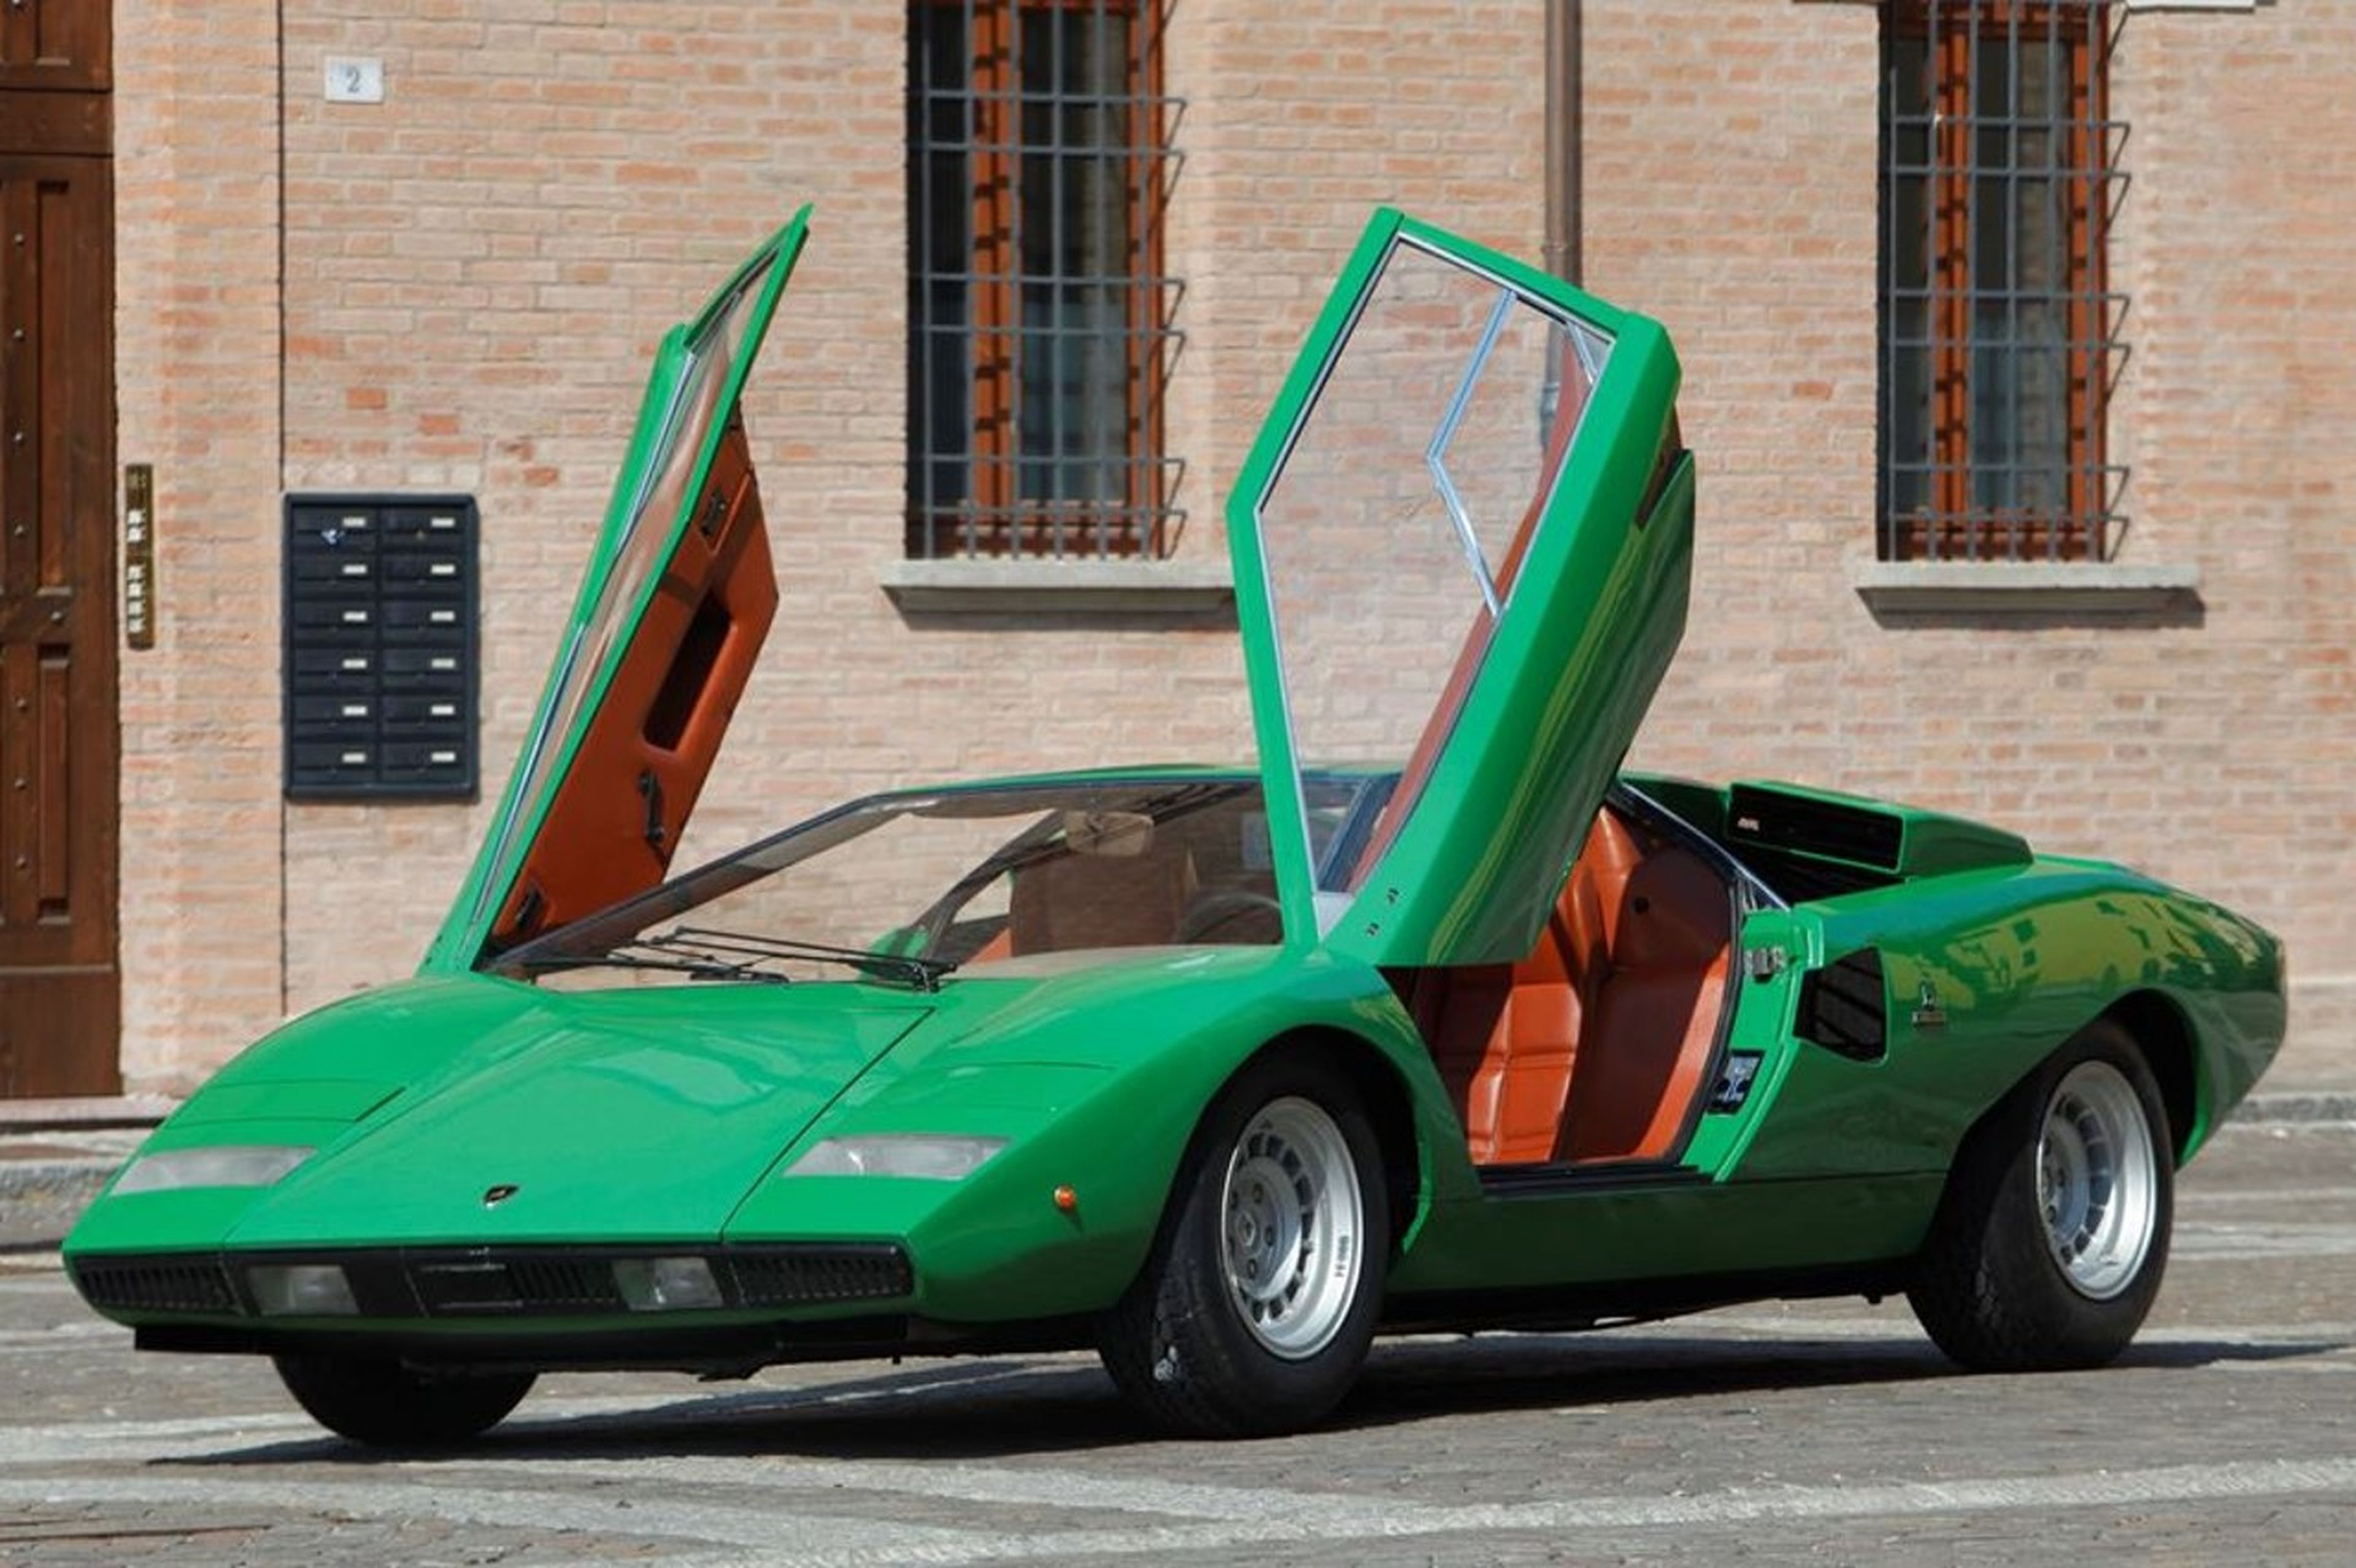 Lamborghini Automobili nació tras una discusión con Ferrari